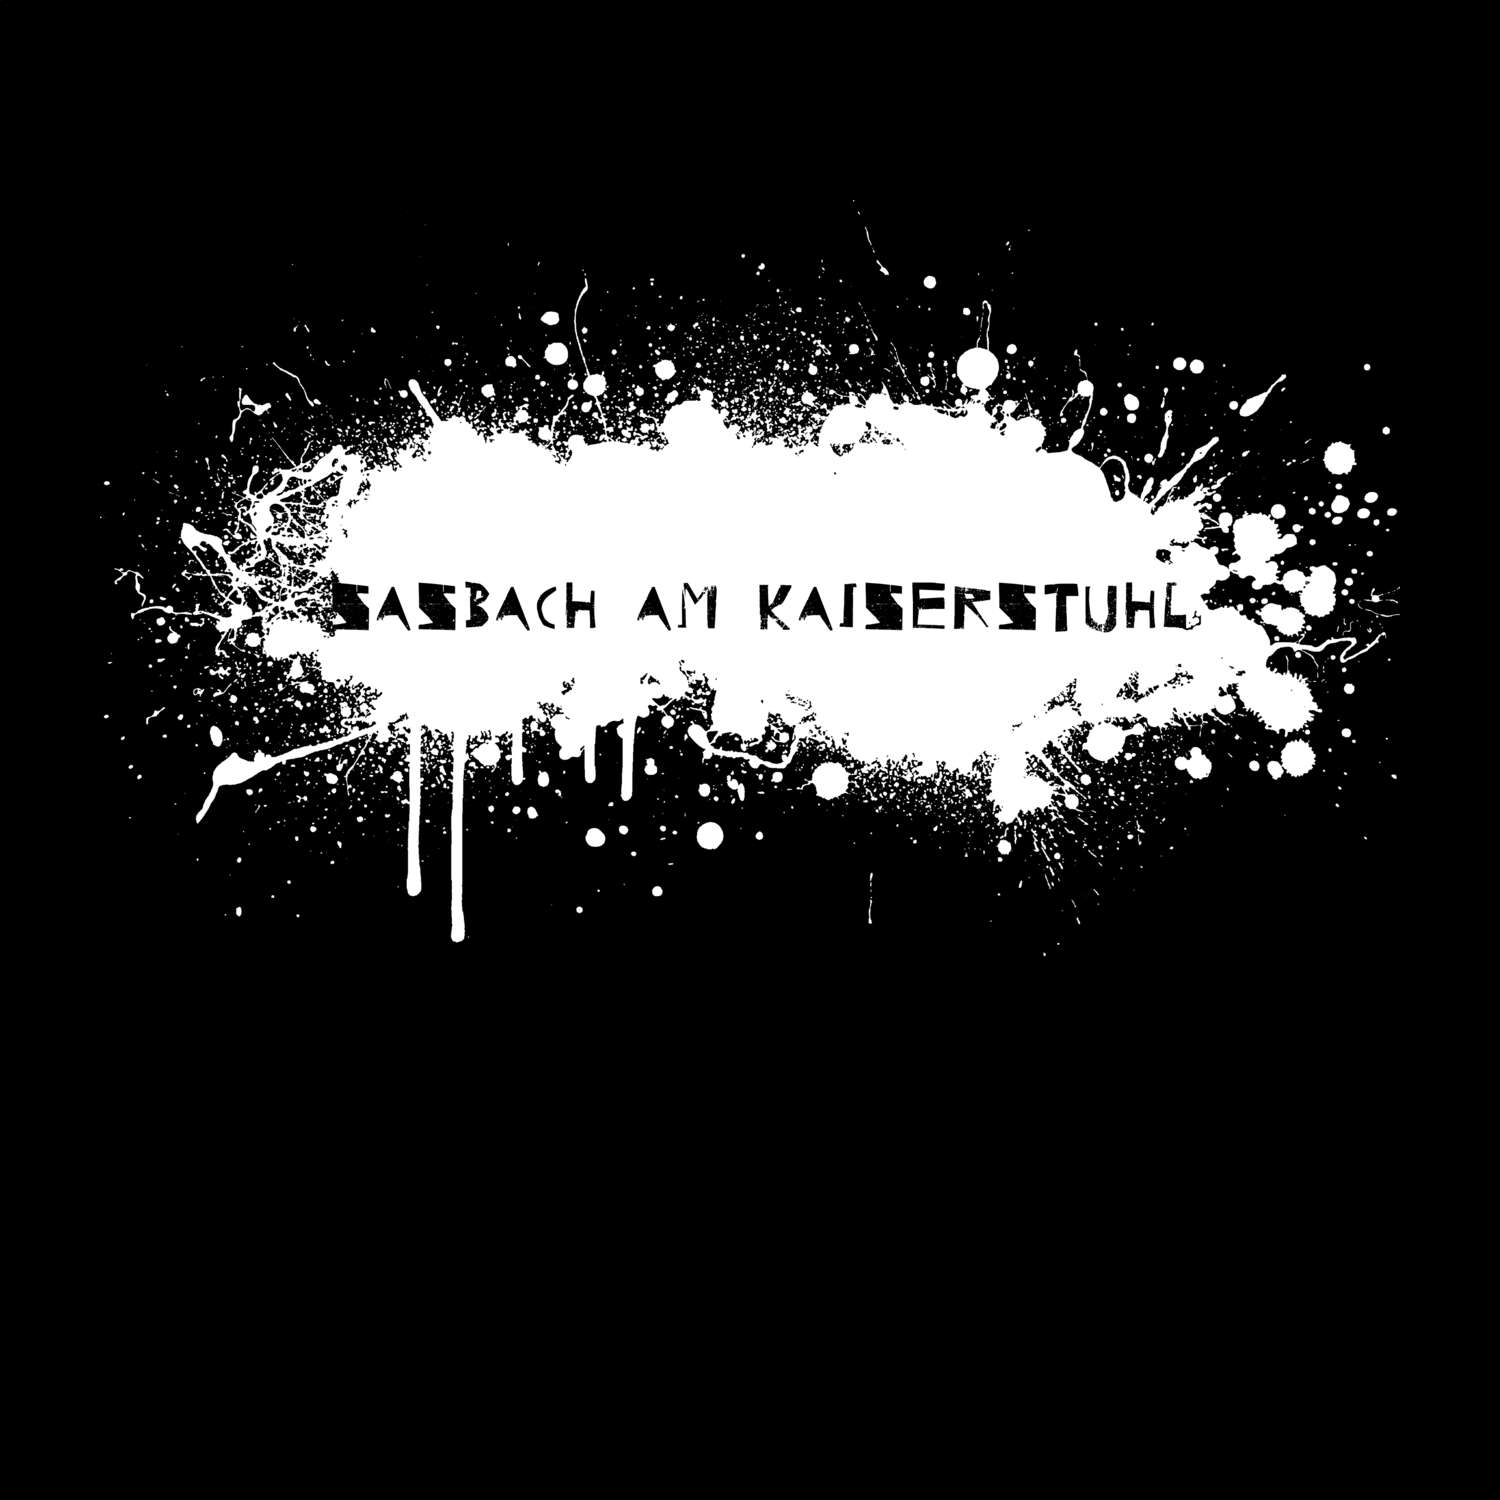 Sasbach am Kaiserstuhl T-Shirt »Paint Splash Punk«